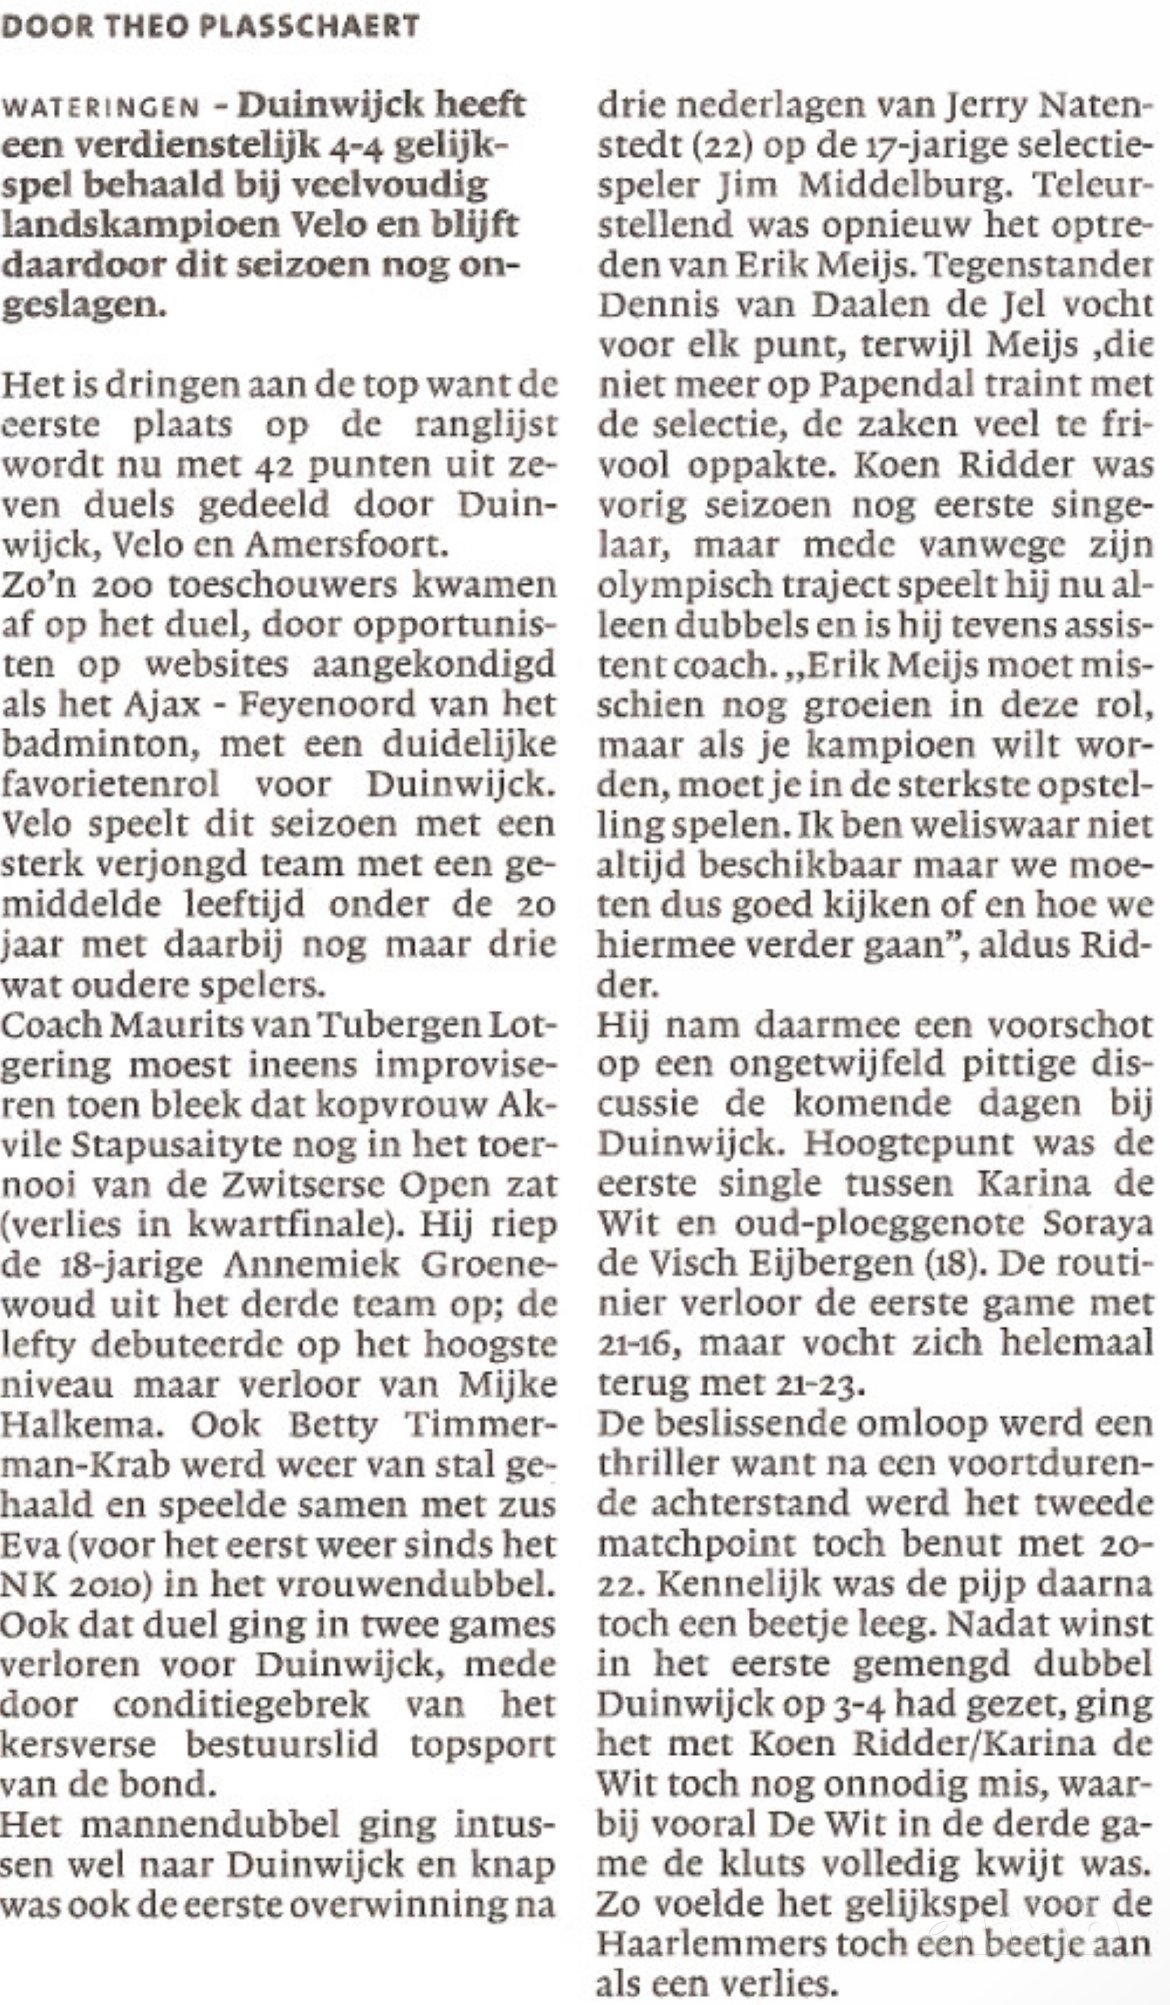 (c) Haarlems Dagblad